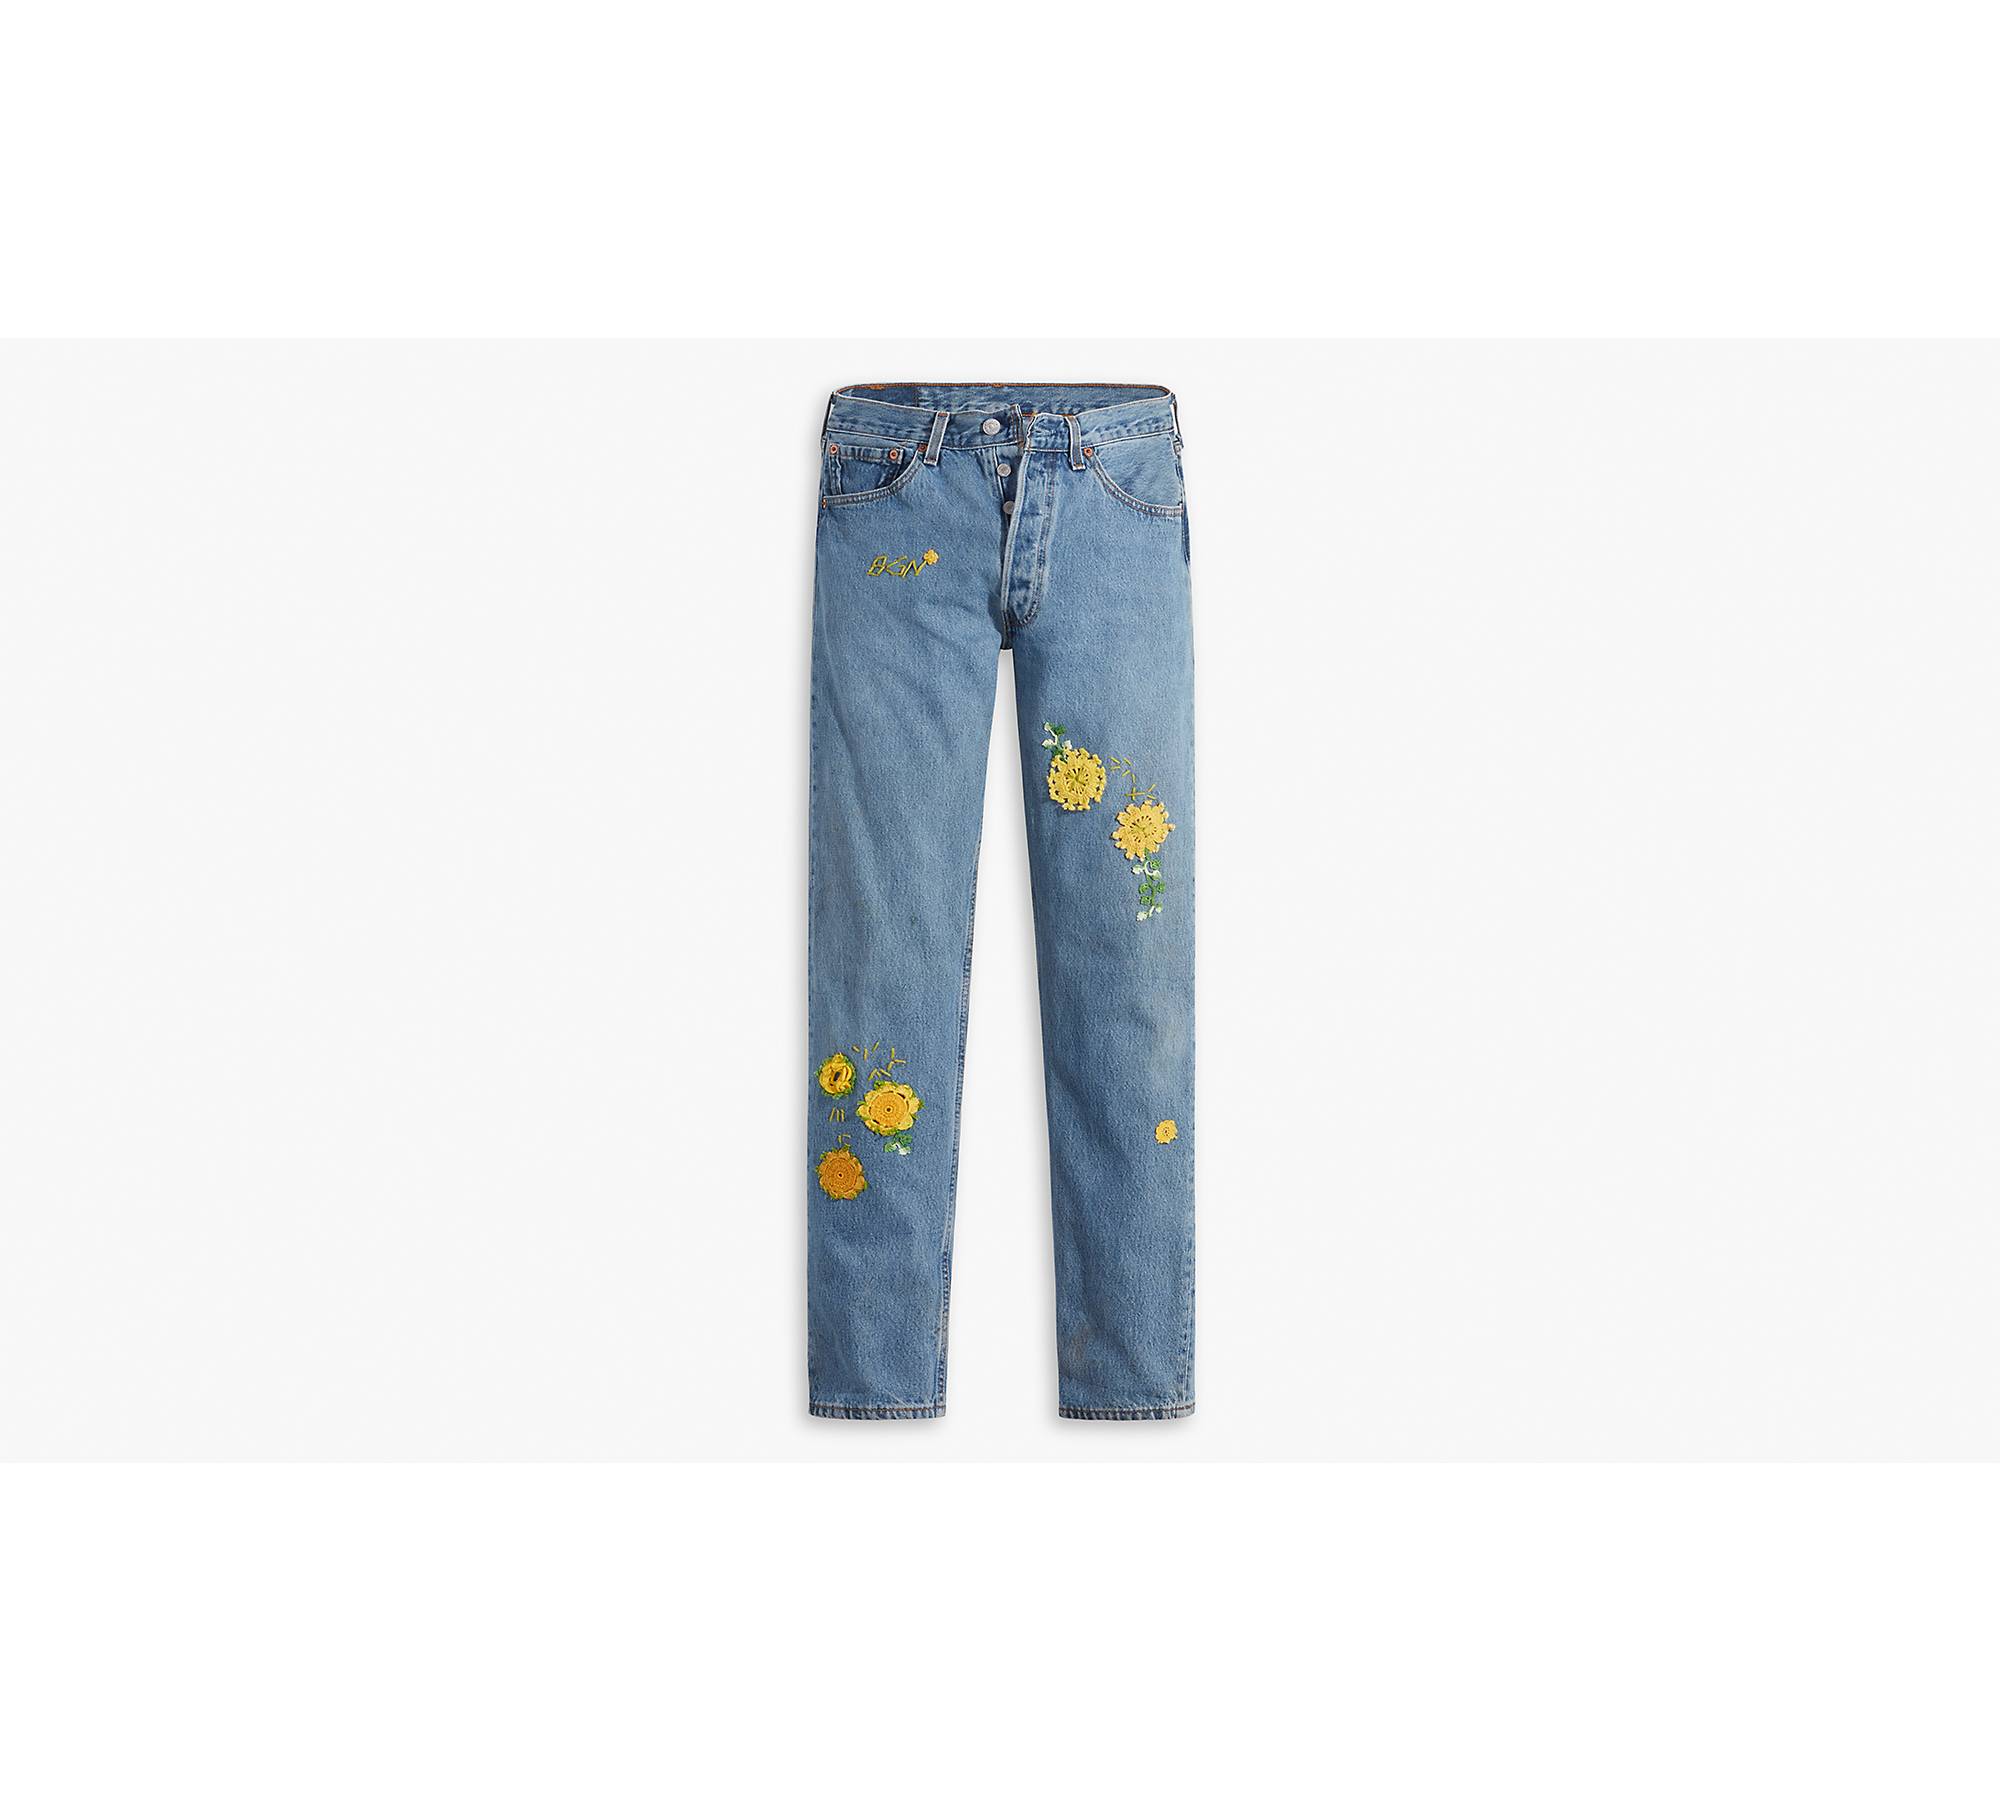 Levi's® Authorized Vintage X Bentgablenits 501® Original Fit Jeans